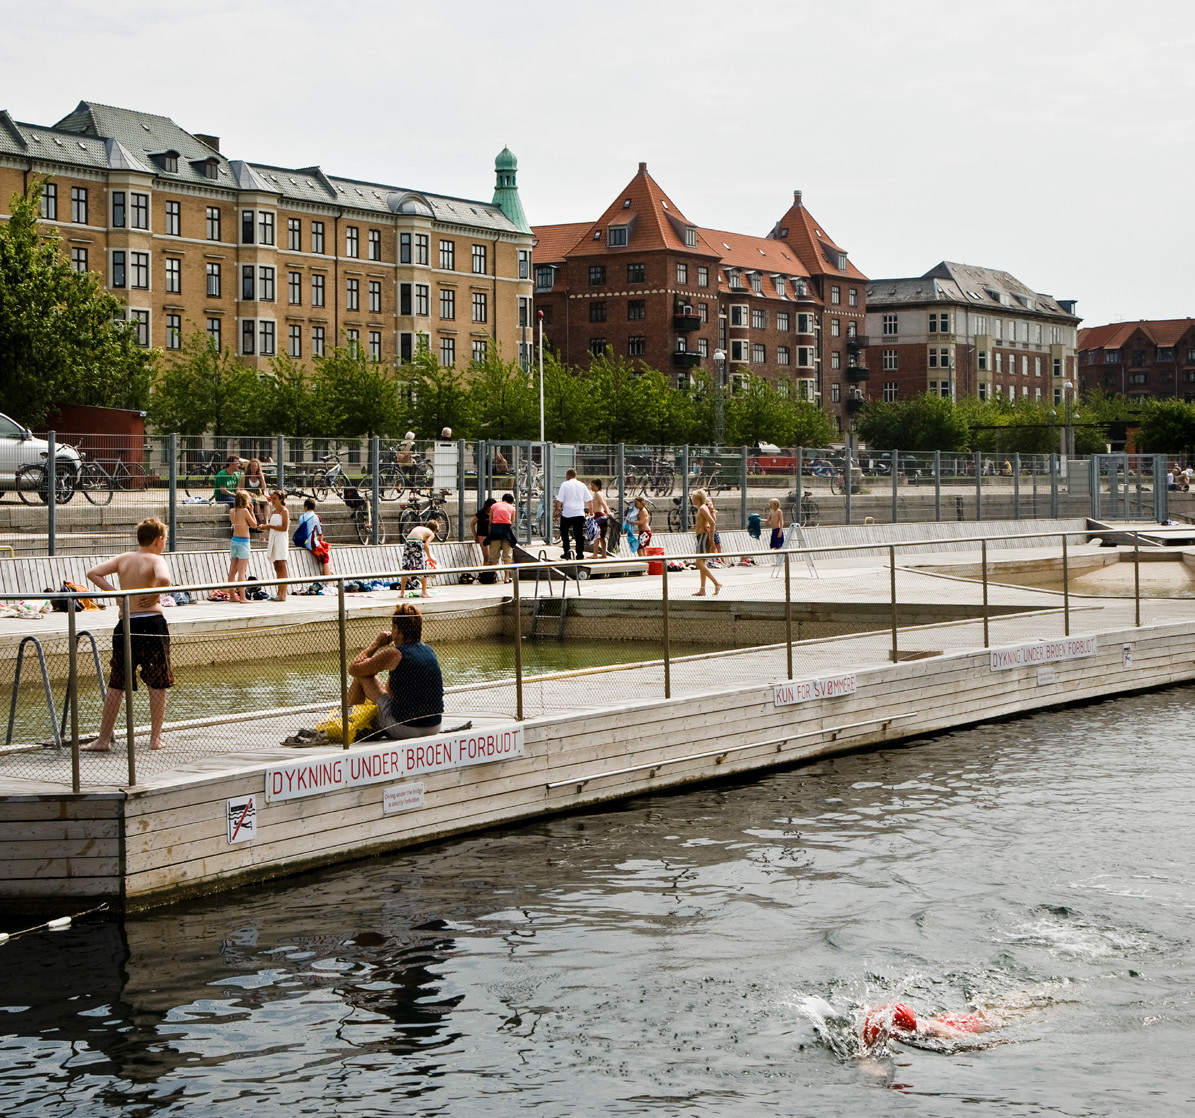 Århus og Københavns havnenære industriområder er blevet omdannet til livlige boligkvarterer. Livet skabes også ved de mange gæster fra hele byen, der nyder sommerlivet ved vandet. Foto: Thorbjørn Hansen, Kontraframe